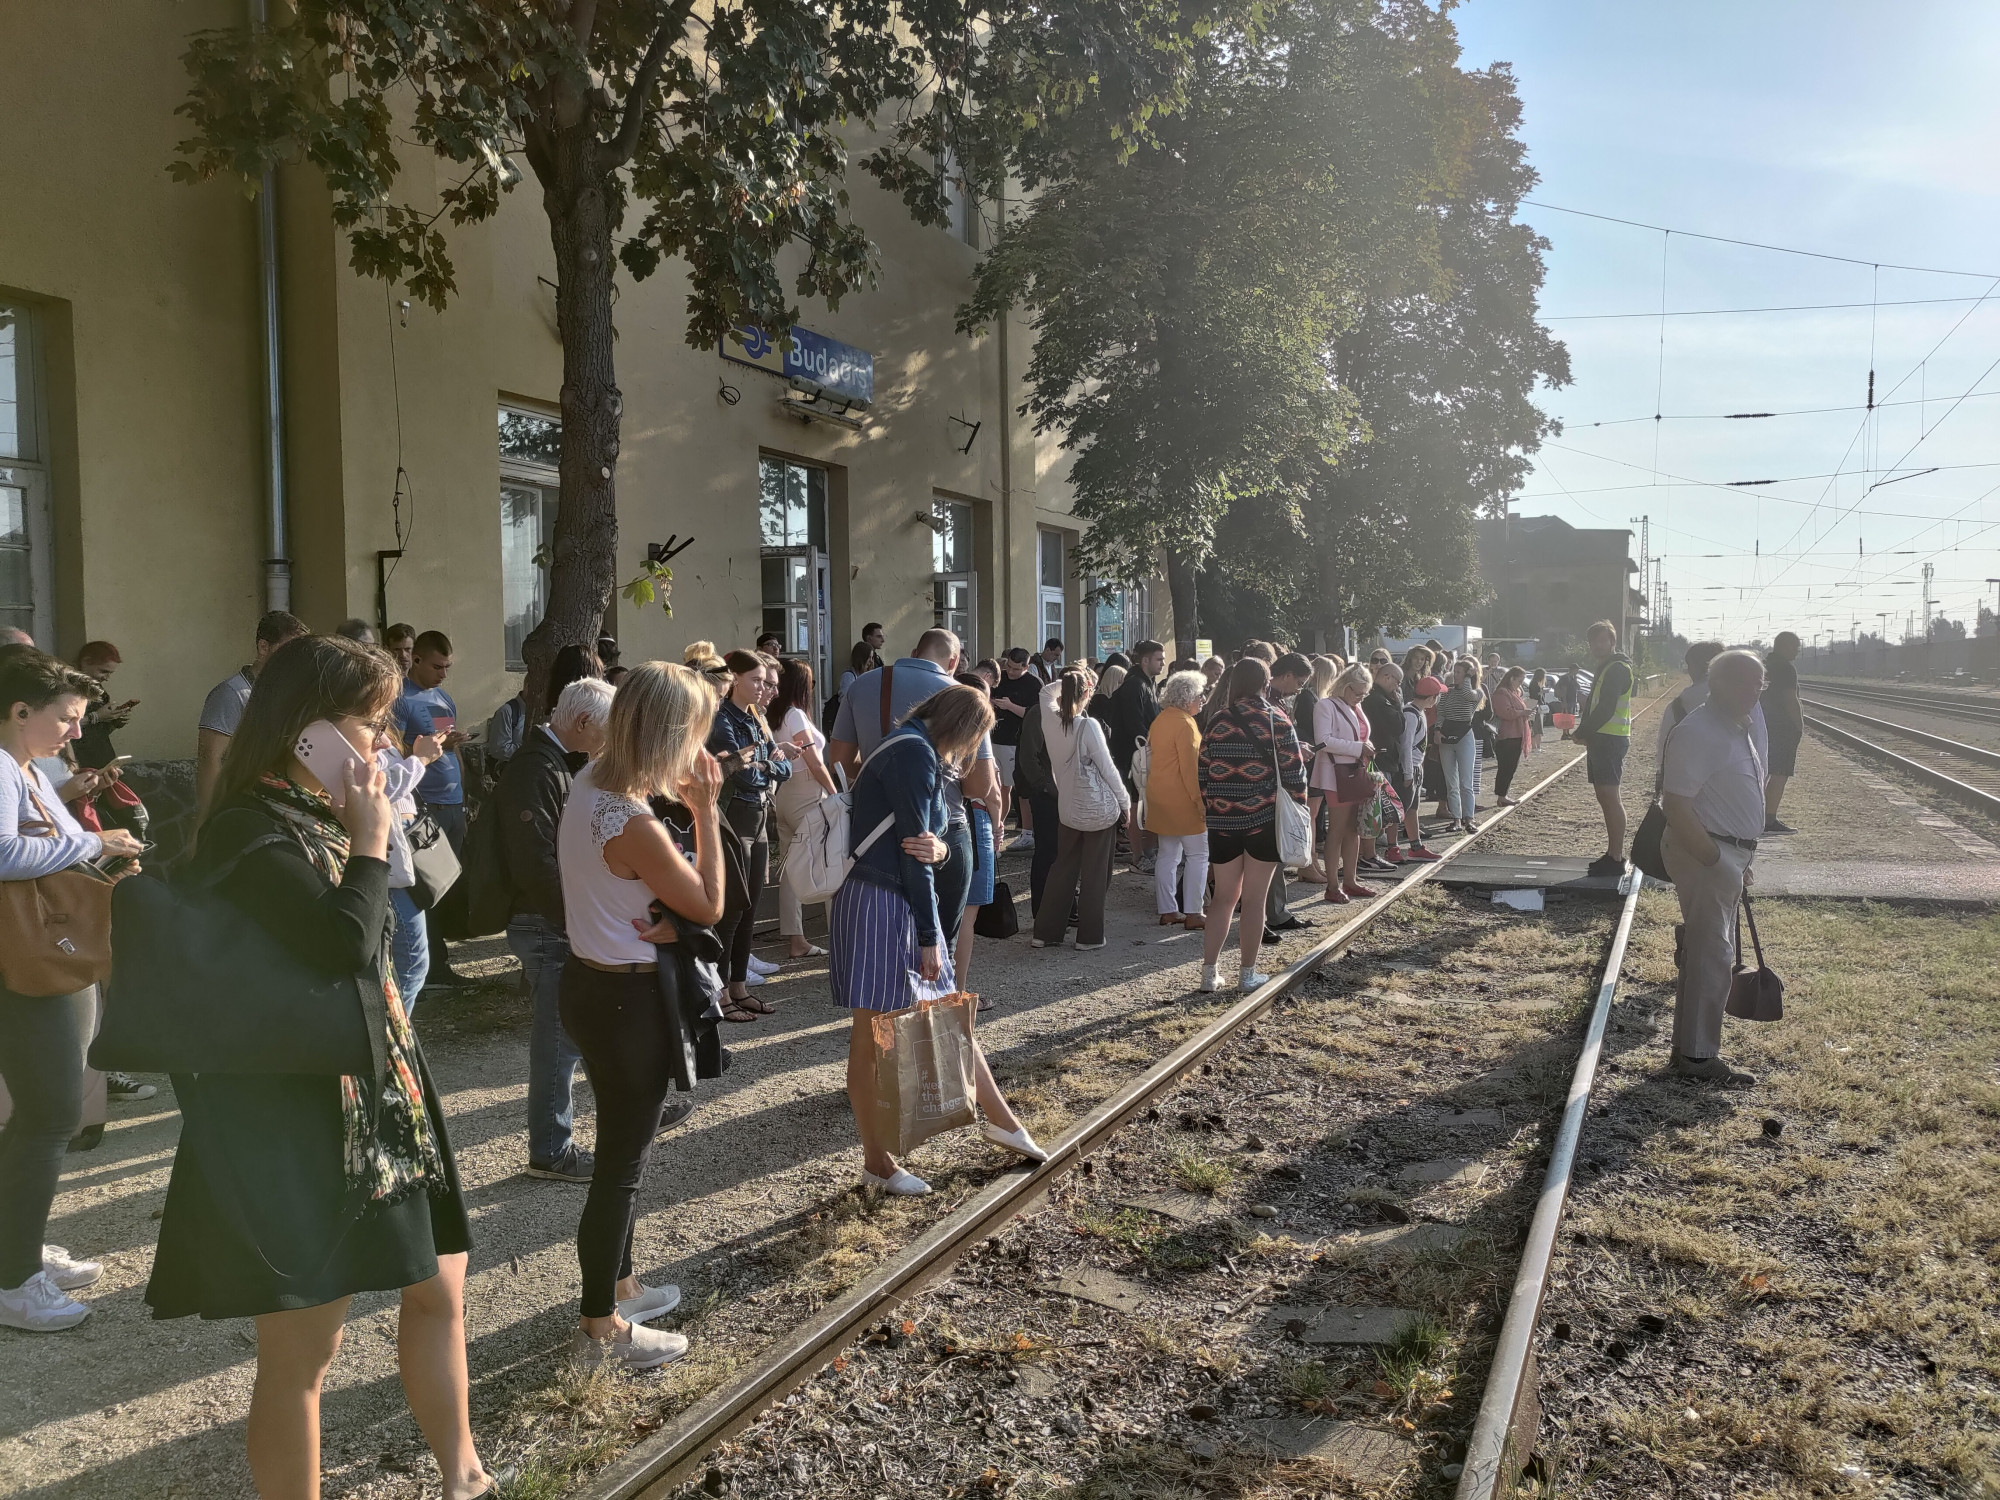 Utazott a héten a Budapest-Hegyeshalom vasútvonalon? Írja meg nekünk tapasztalatait!